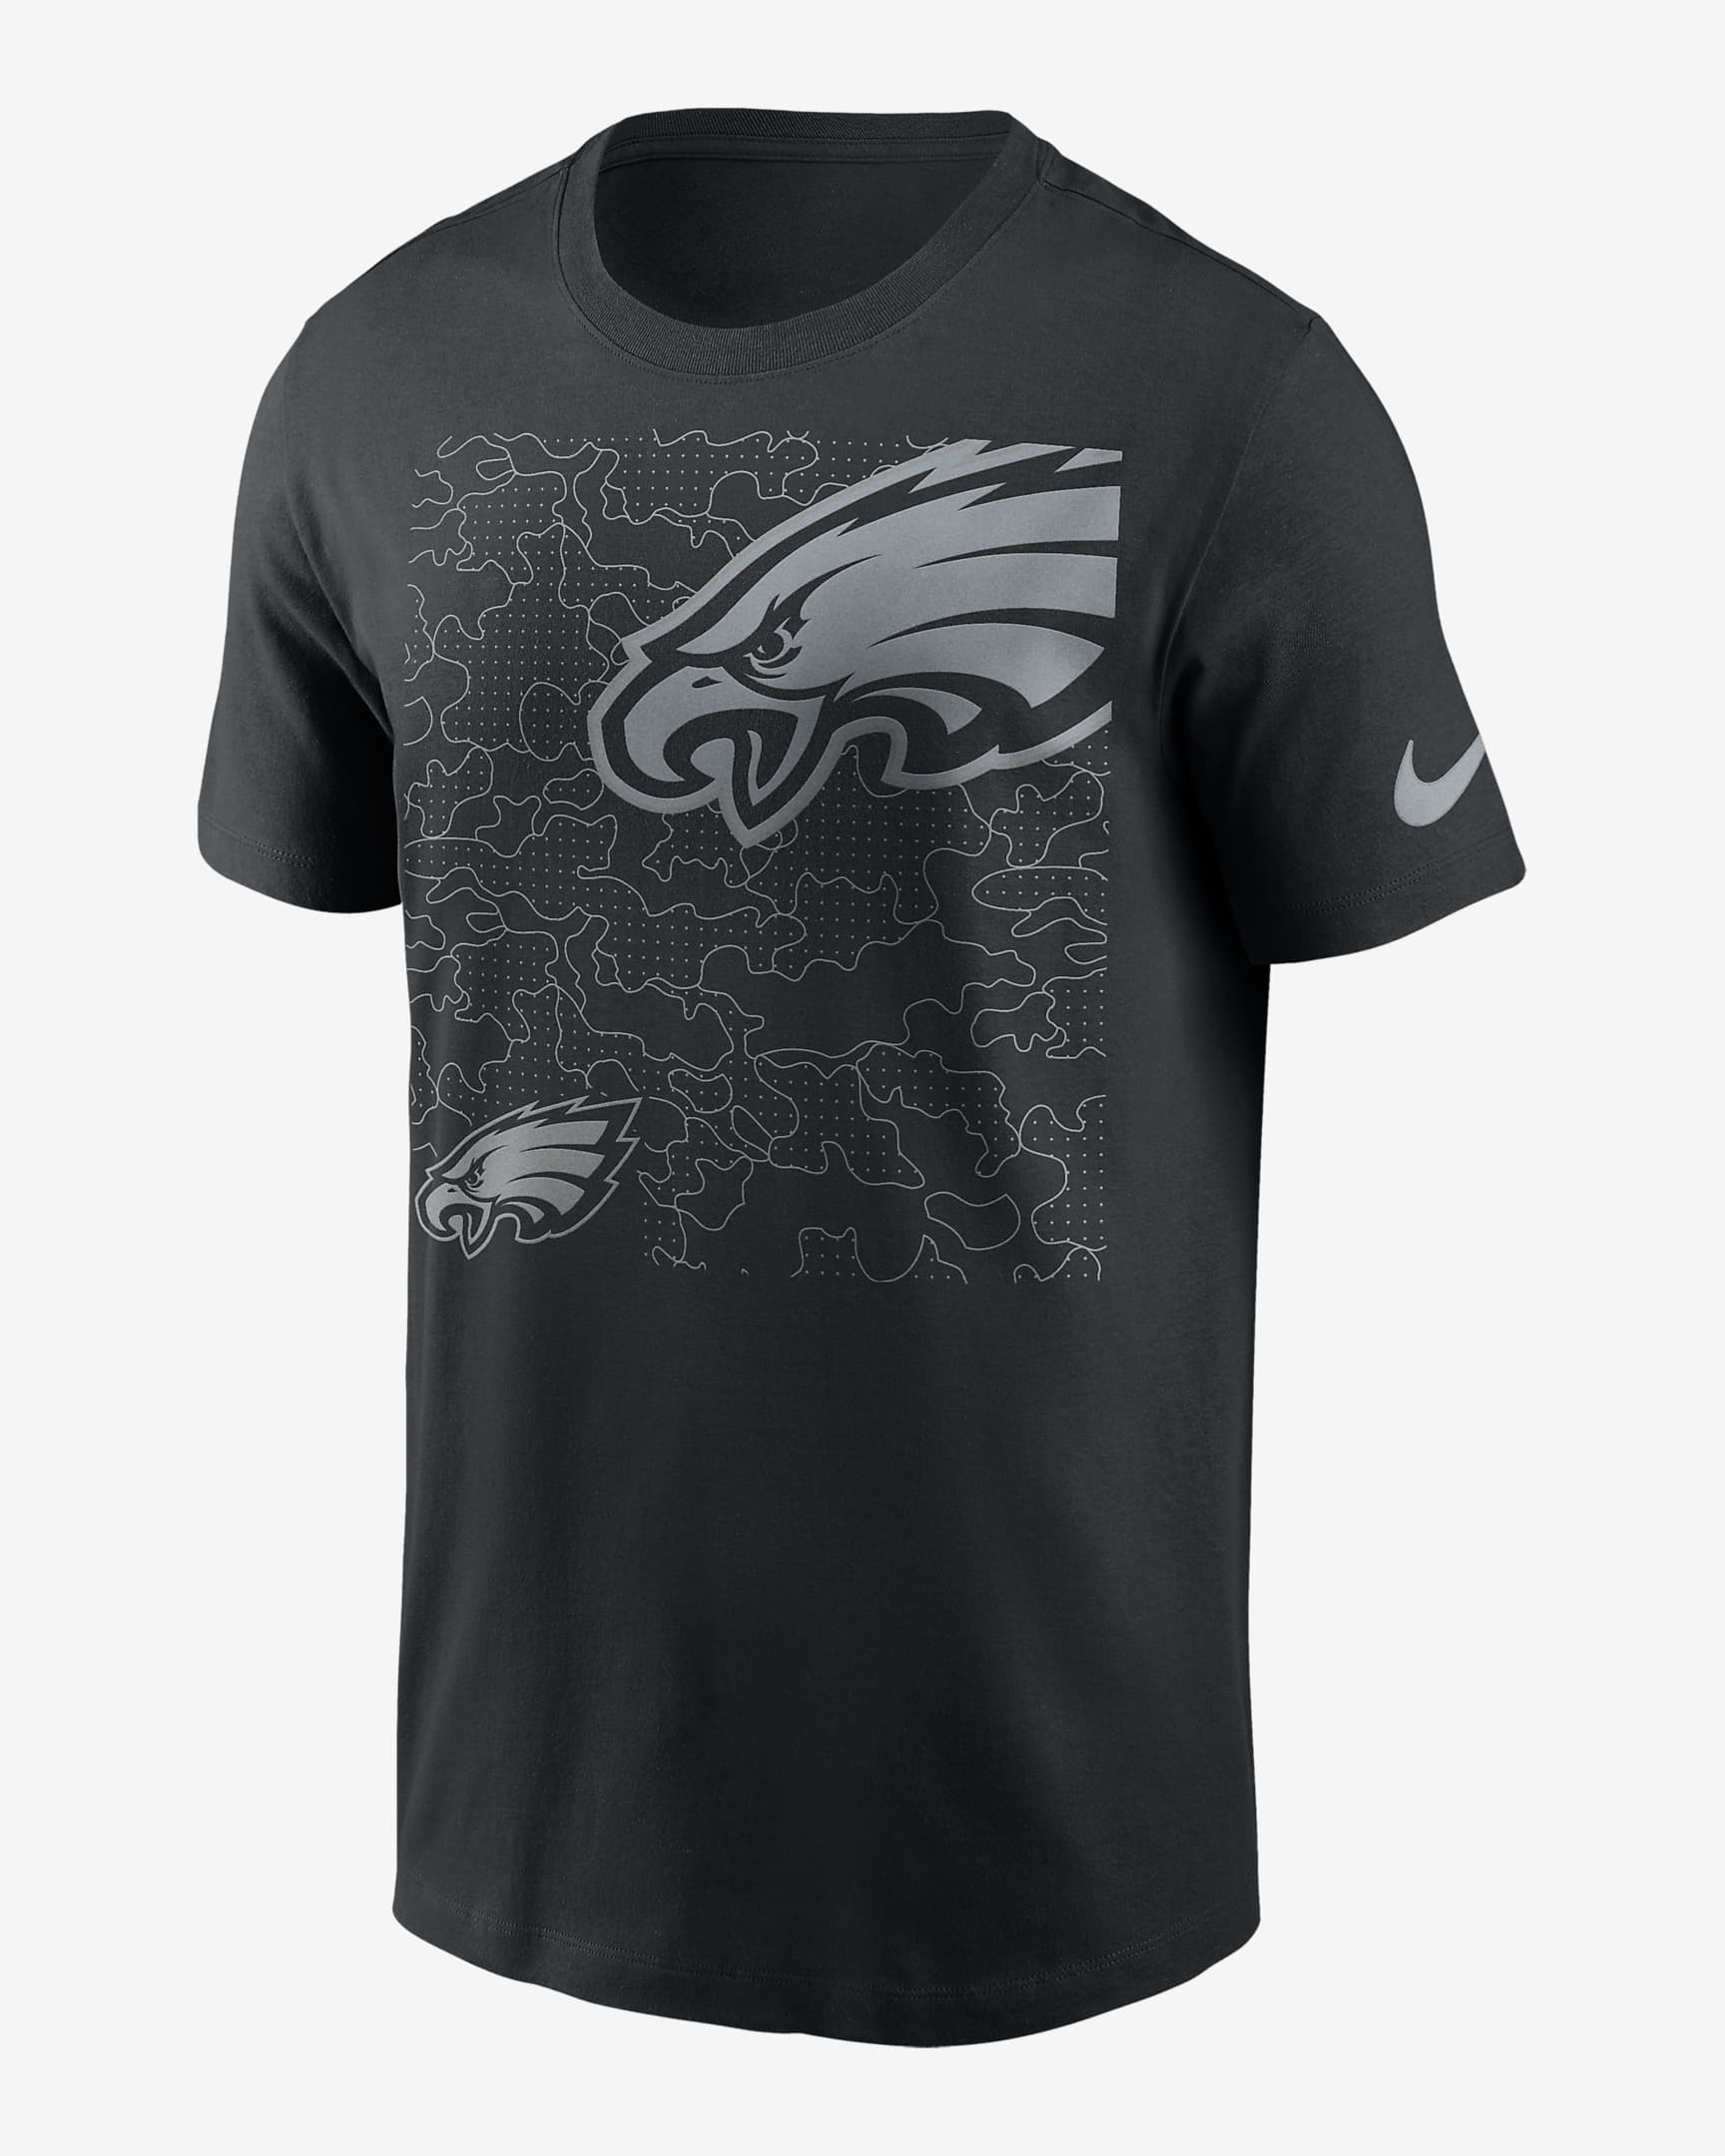 Playera para hombre Nike RFLCTV Logo (NFL Philadelphia Eagles). Nike.com